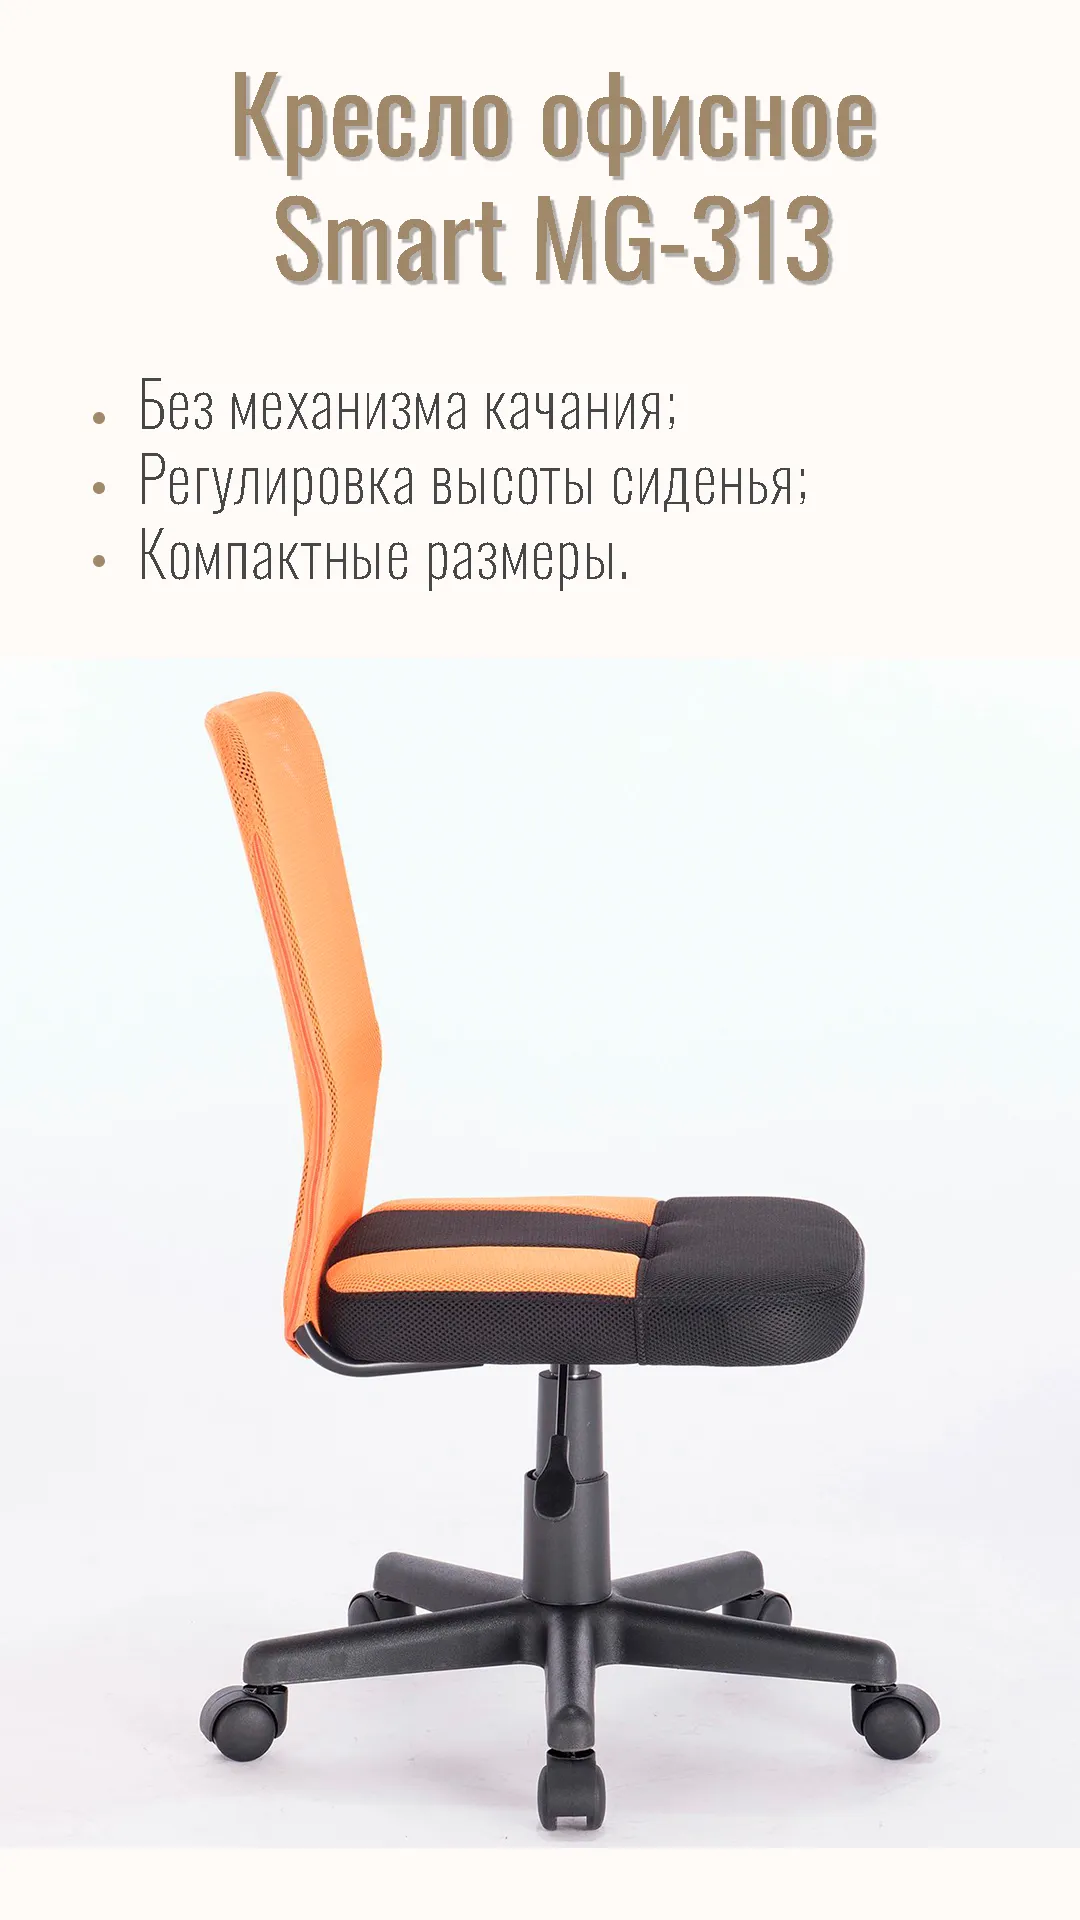 Кресло офисное компактное BRABIX Smart MG-313 Черный оранжевый 531844